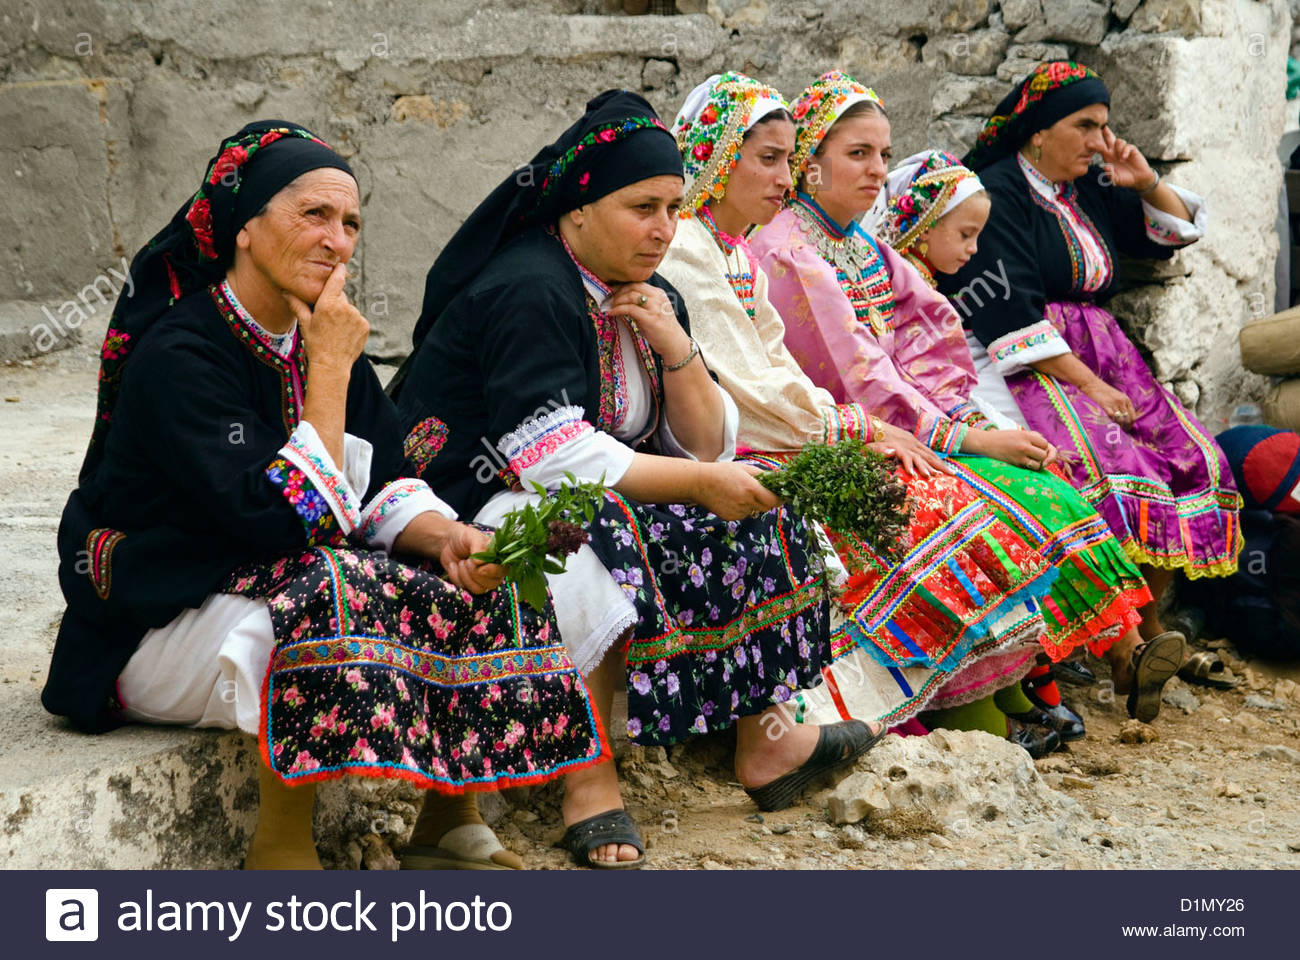 women-wearing-traditional-costumes-at-vroukounta-village-karpathos-D1MY26.jpg